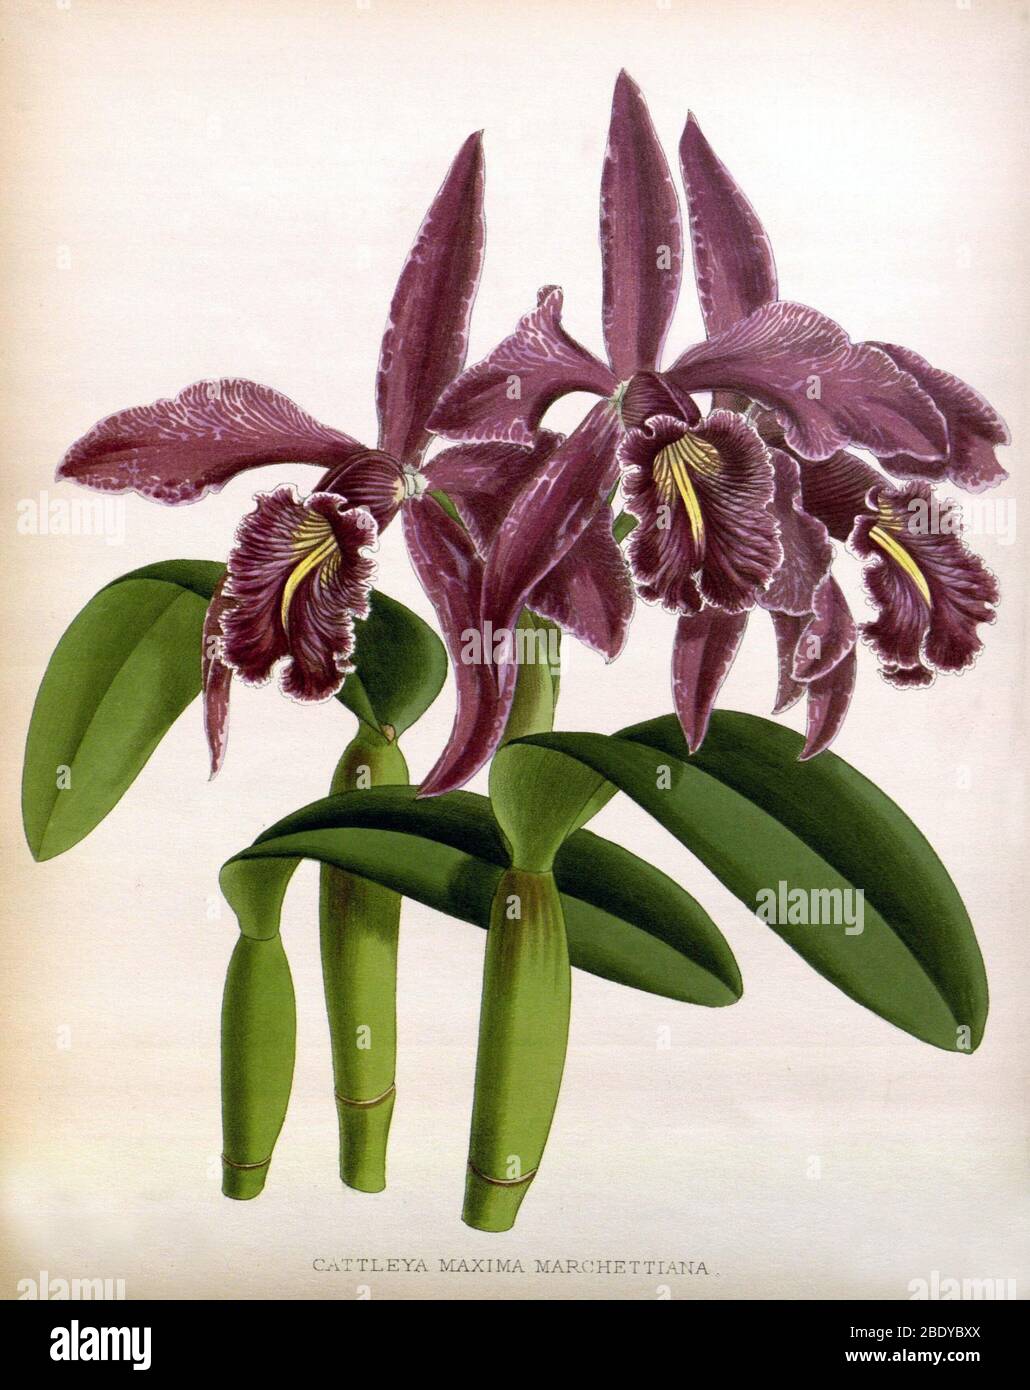 Orchid, C. maxima marchettiana, 1891 Stock Photo